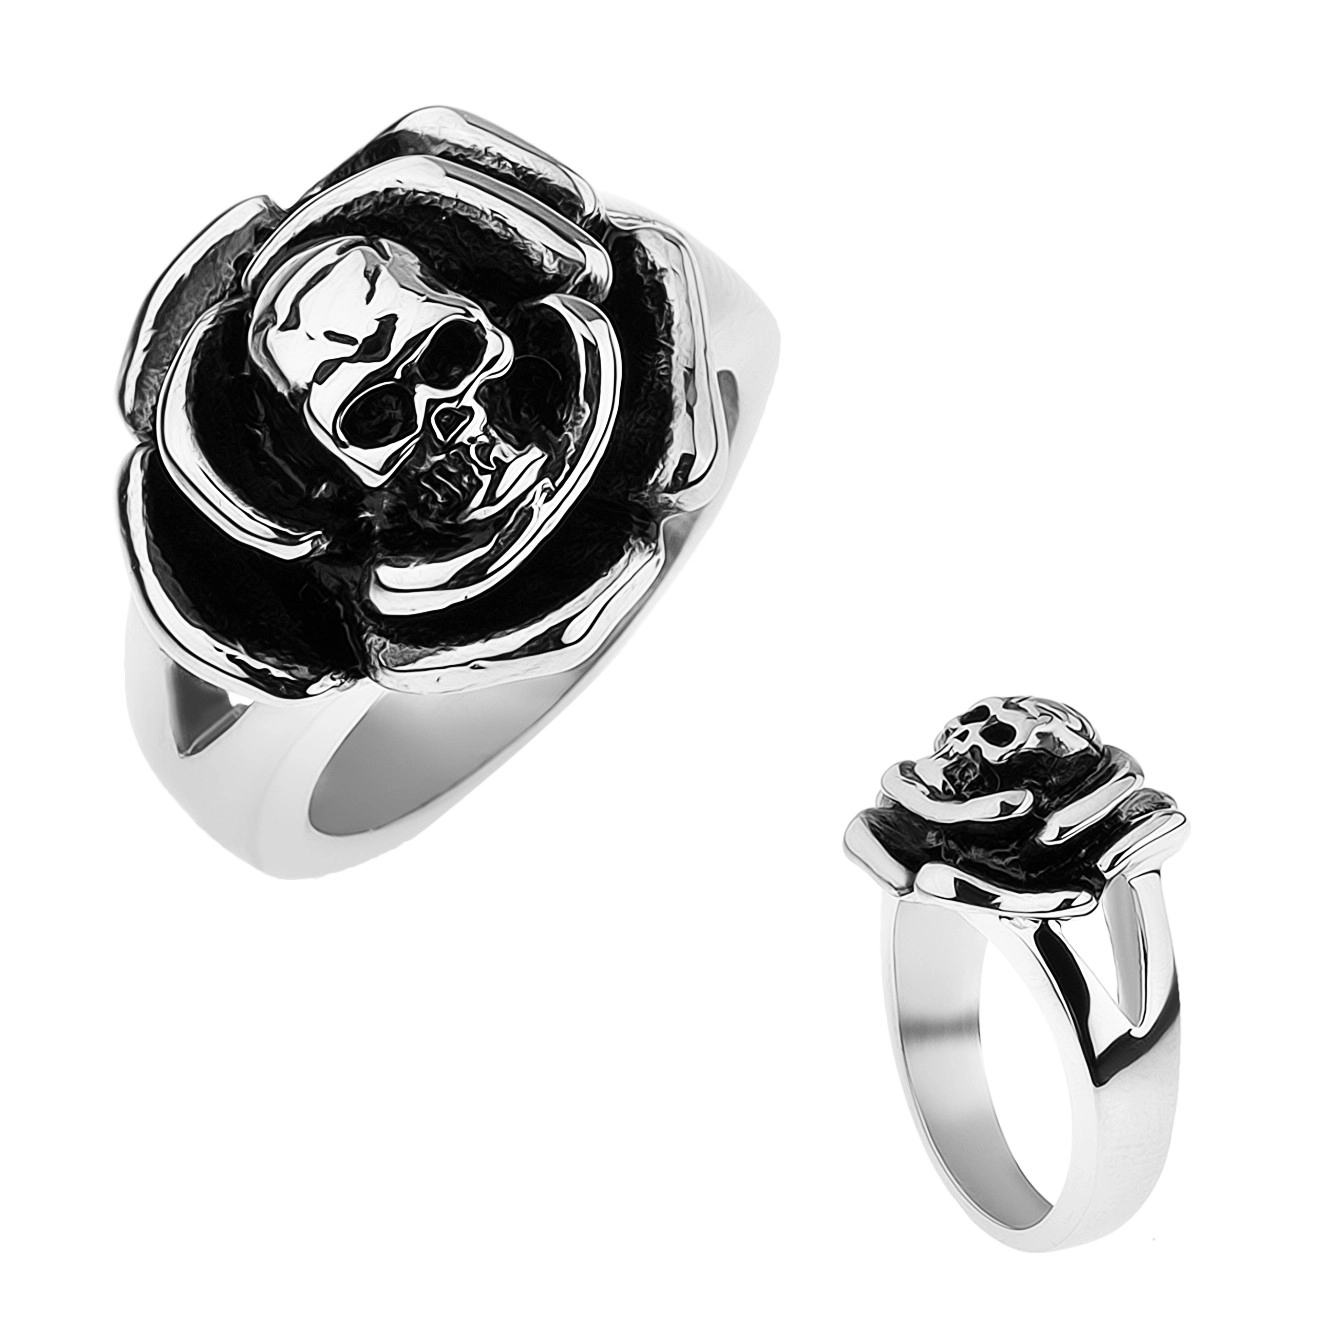 Patinovaný oceľový prsteň, ruža s lebkou v strede, rozdvojené ramená - Veľkosť: 62 mm